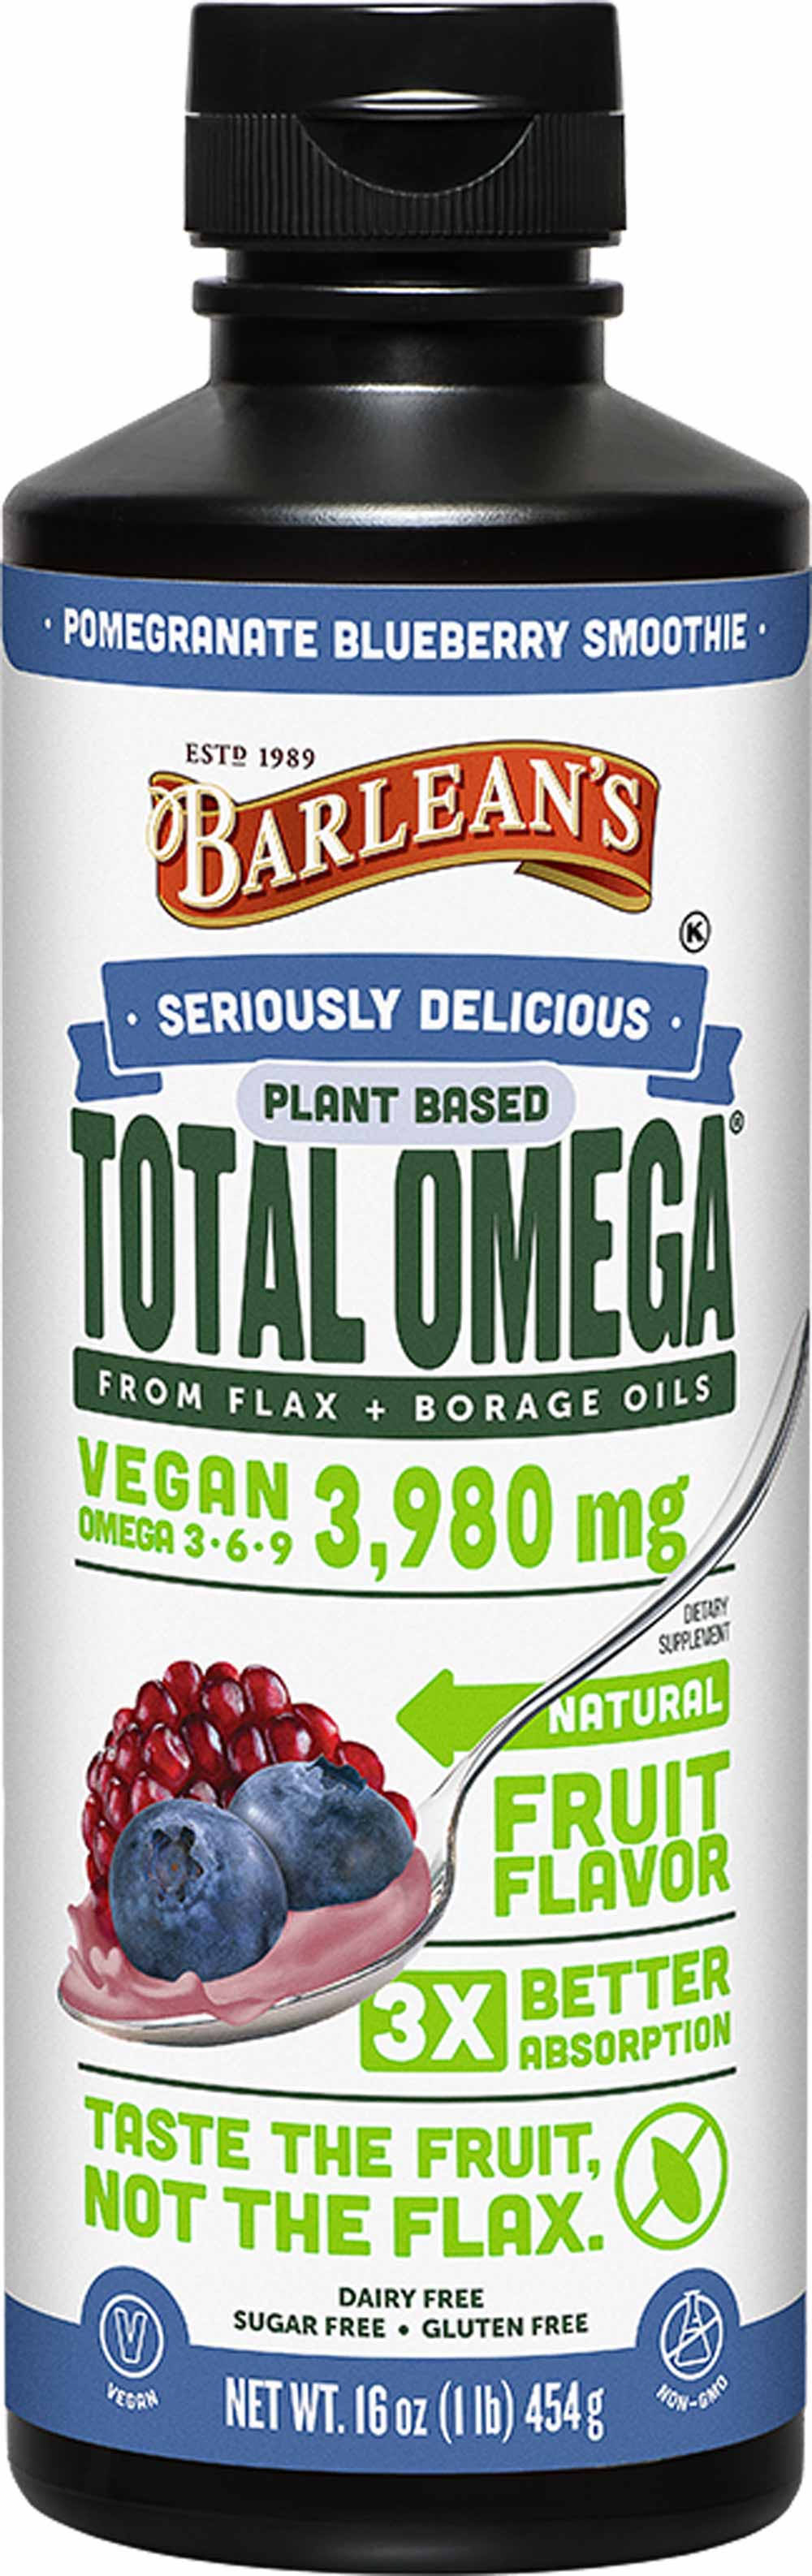 Barlean's Total Omega 3-6-9 Vegan - Pomegranate, Blueberry, 470ml